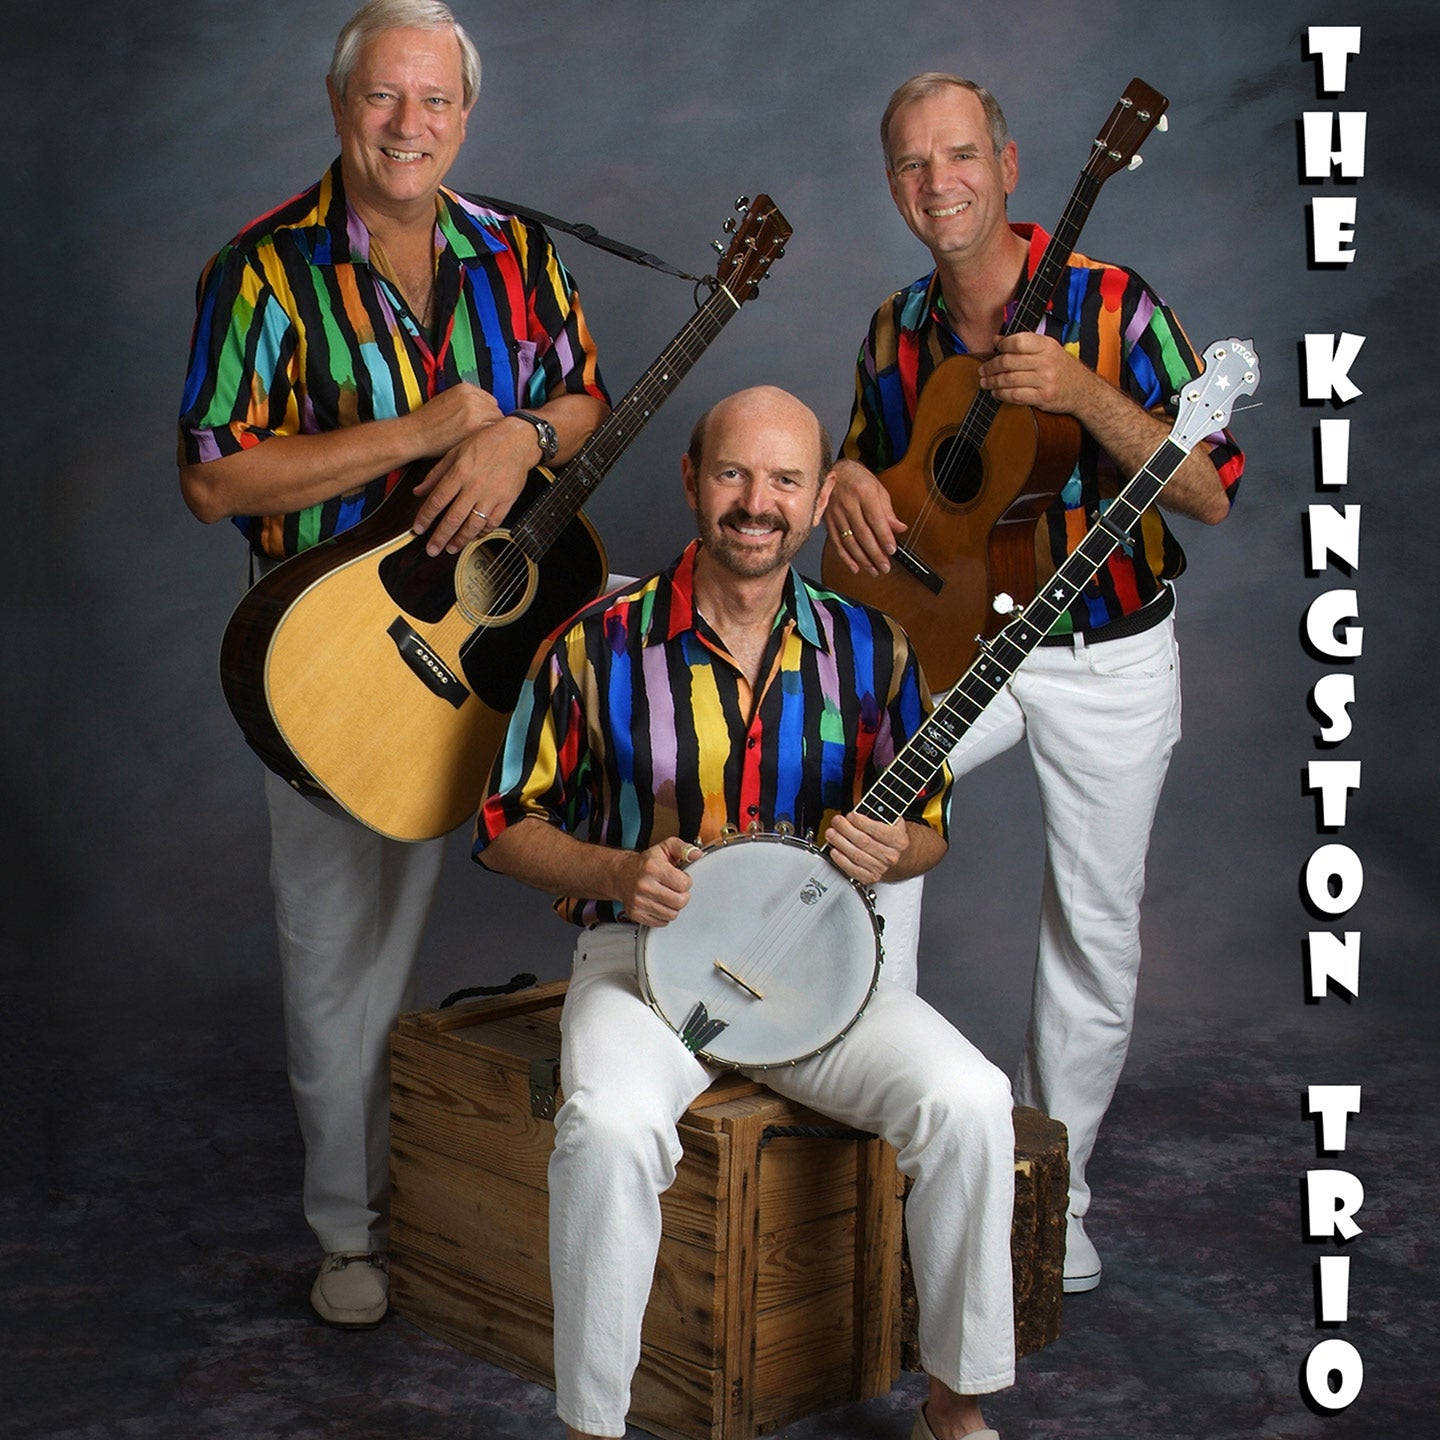 The Kingston Trio Mcglohon Theater Performance Photoshoot Wallpaper